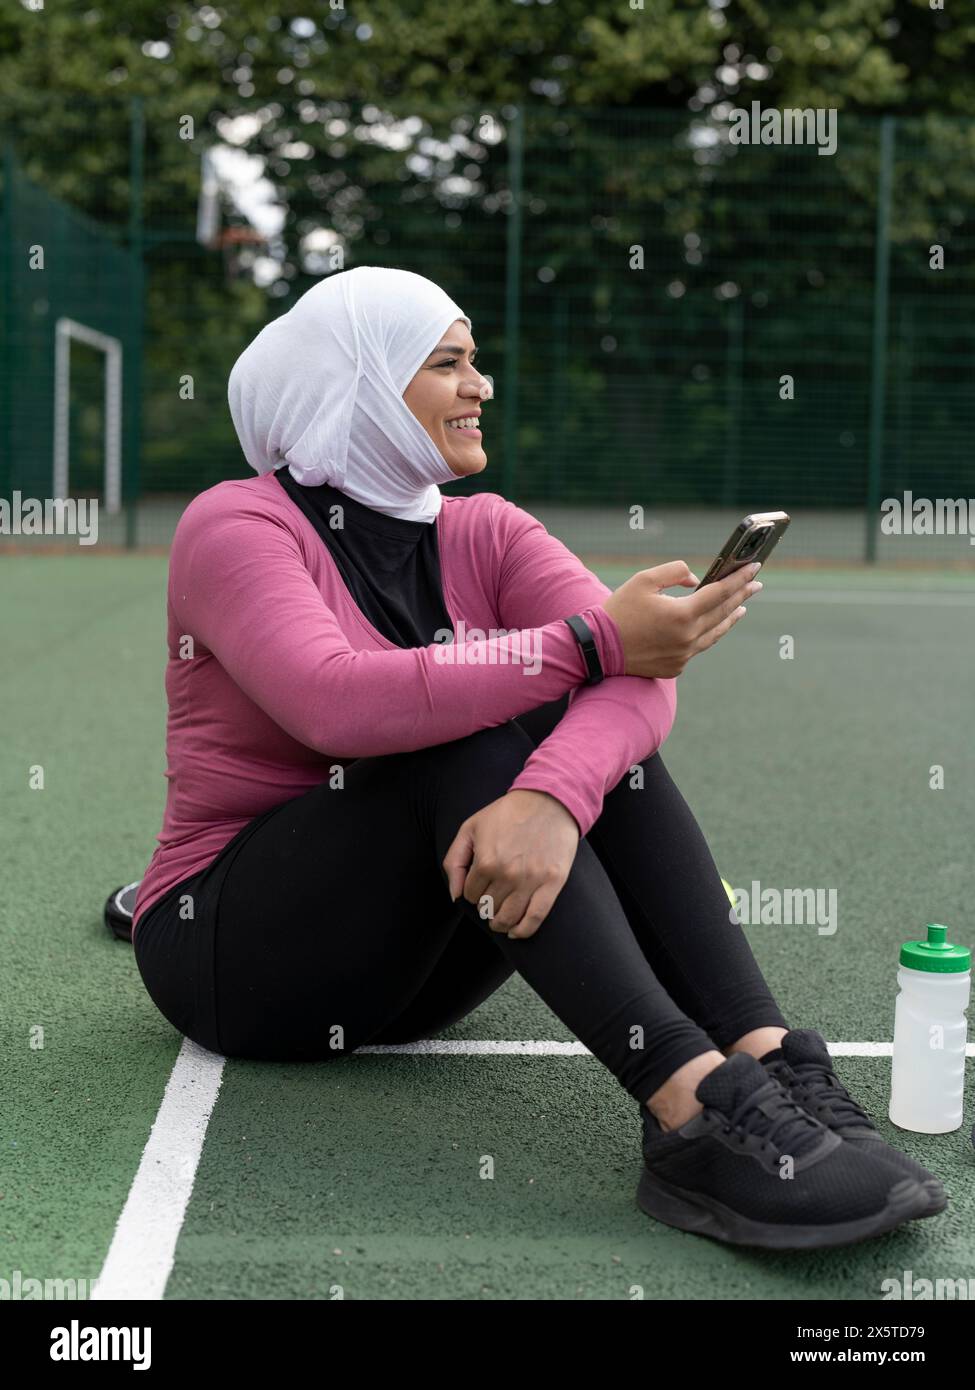 Großbritannien, Sutton, Frau im Kopftuch, die auf dem Tennisplatz sitzt und ihr Smartphone hält Stockfoto